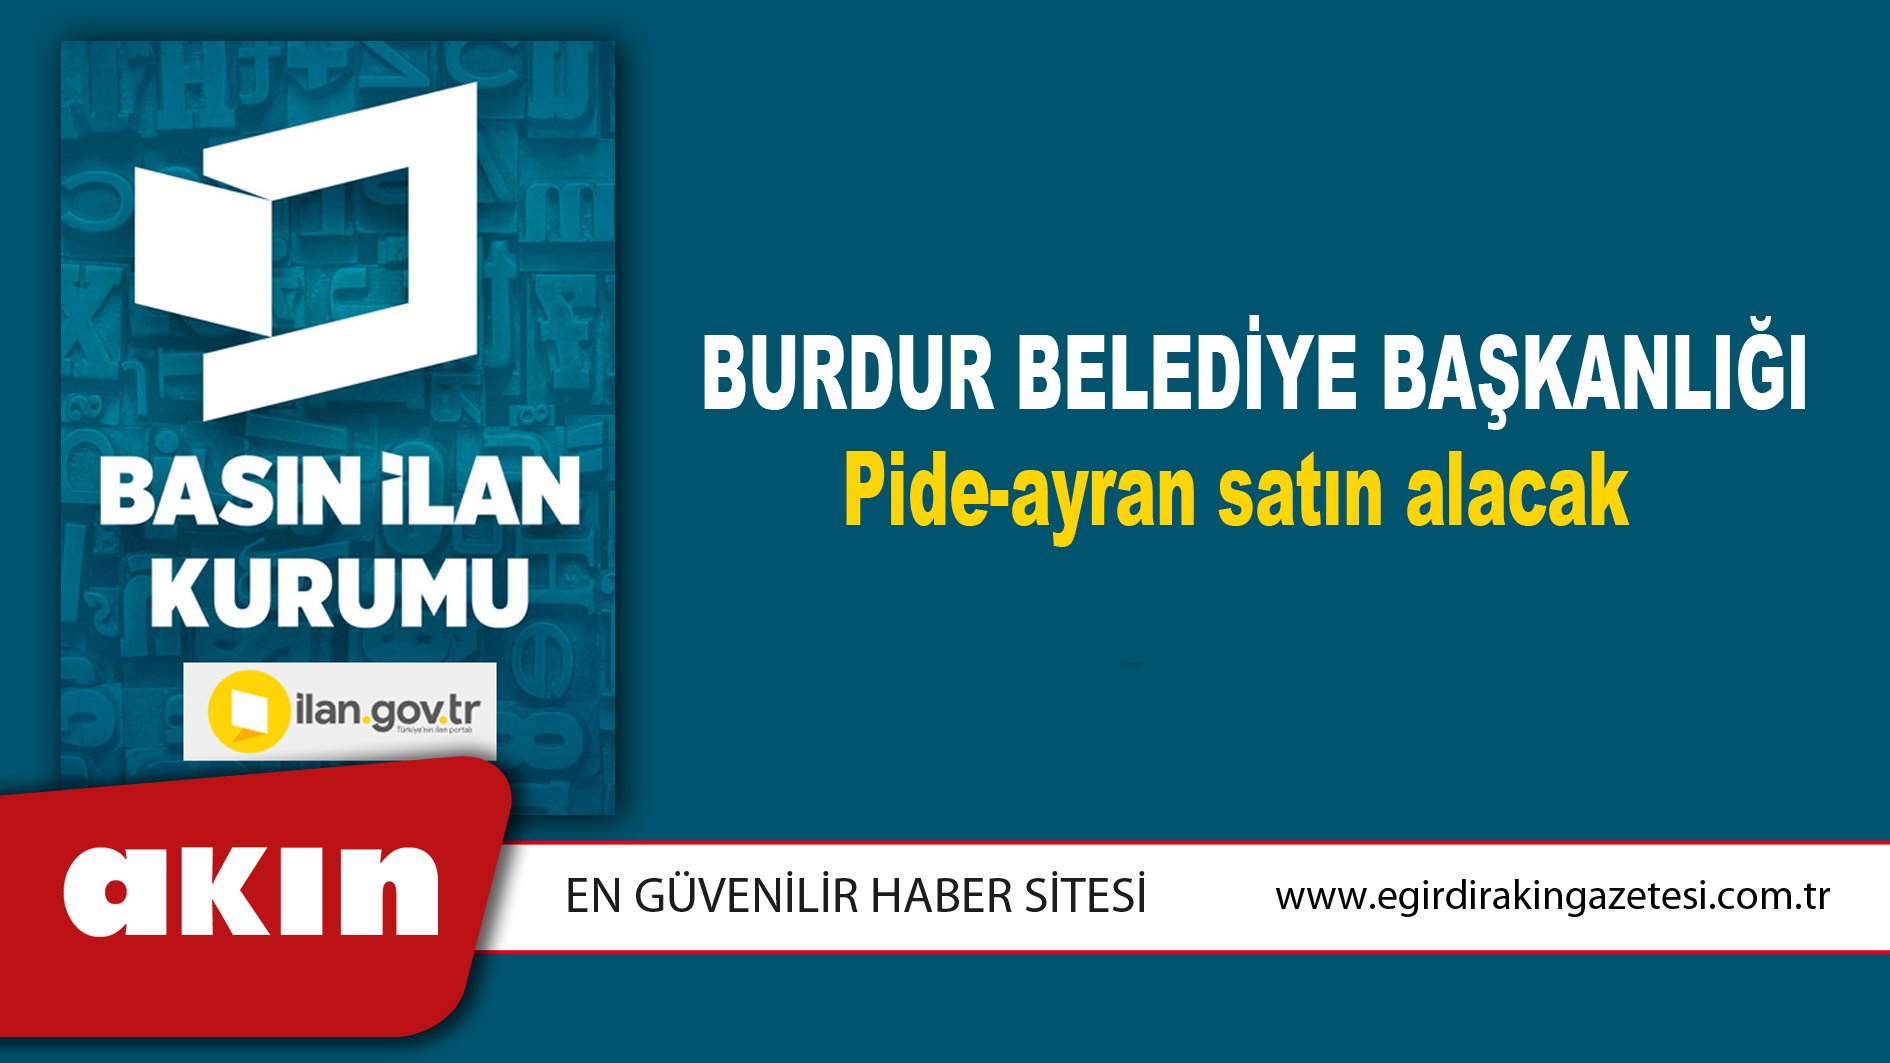 Burdur Belediye Başkanlığı Pide-ayran satın alacak